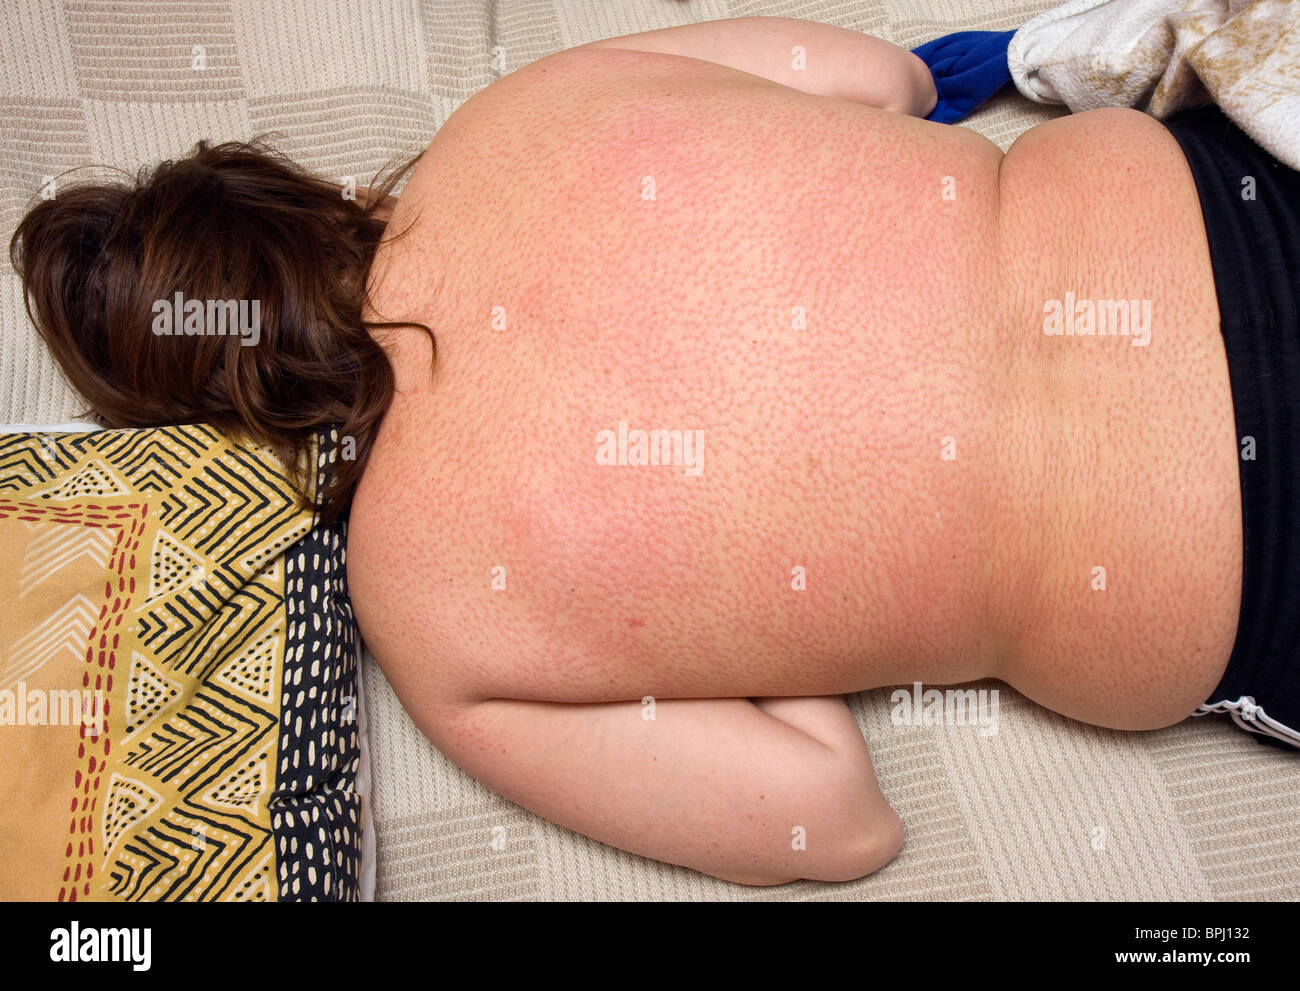 Rote Flecken auf dem Rücken einer Frau nach liegend auf einer Matte Nagel. Stockfoto